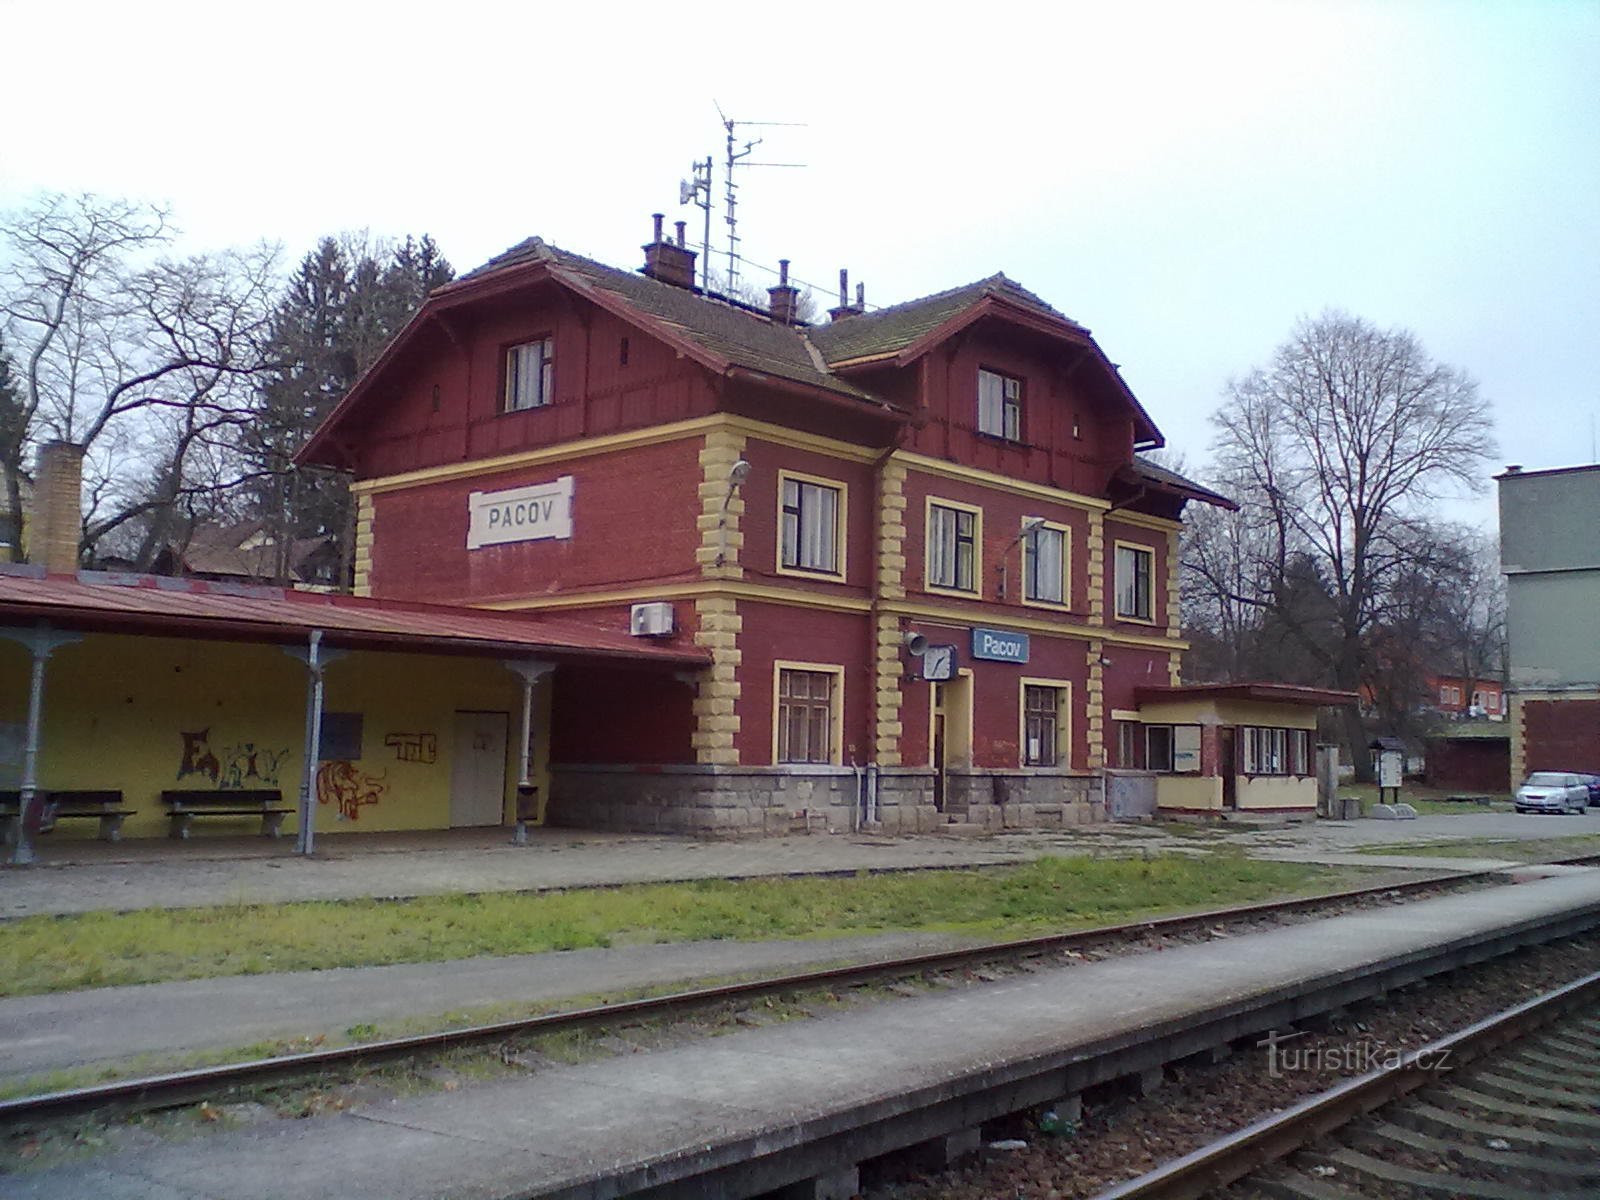 1. Pacov 火车站 - 朝圣的起点和终点。